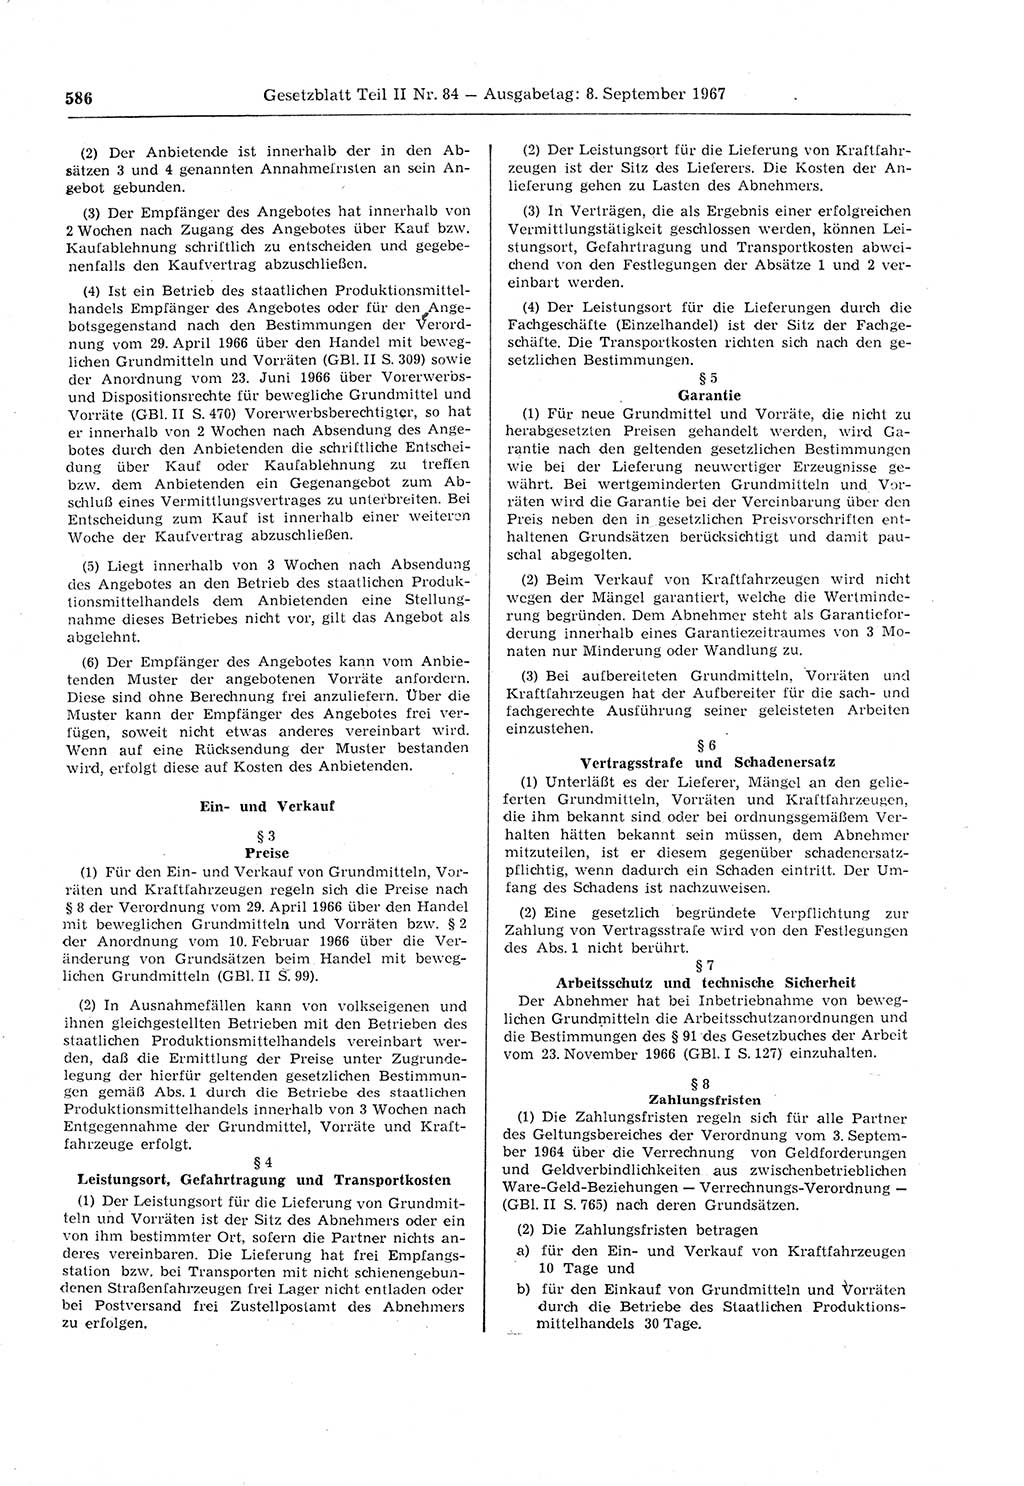 Gesetzblatt (GBl.) der Deutschen Demokratischen Republik (DDR) Teil ⅠⅠ 1967, Seite 586 (GBl. DDR ⅠⅠ 1967, S. 586)